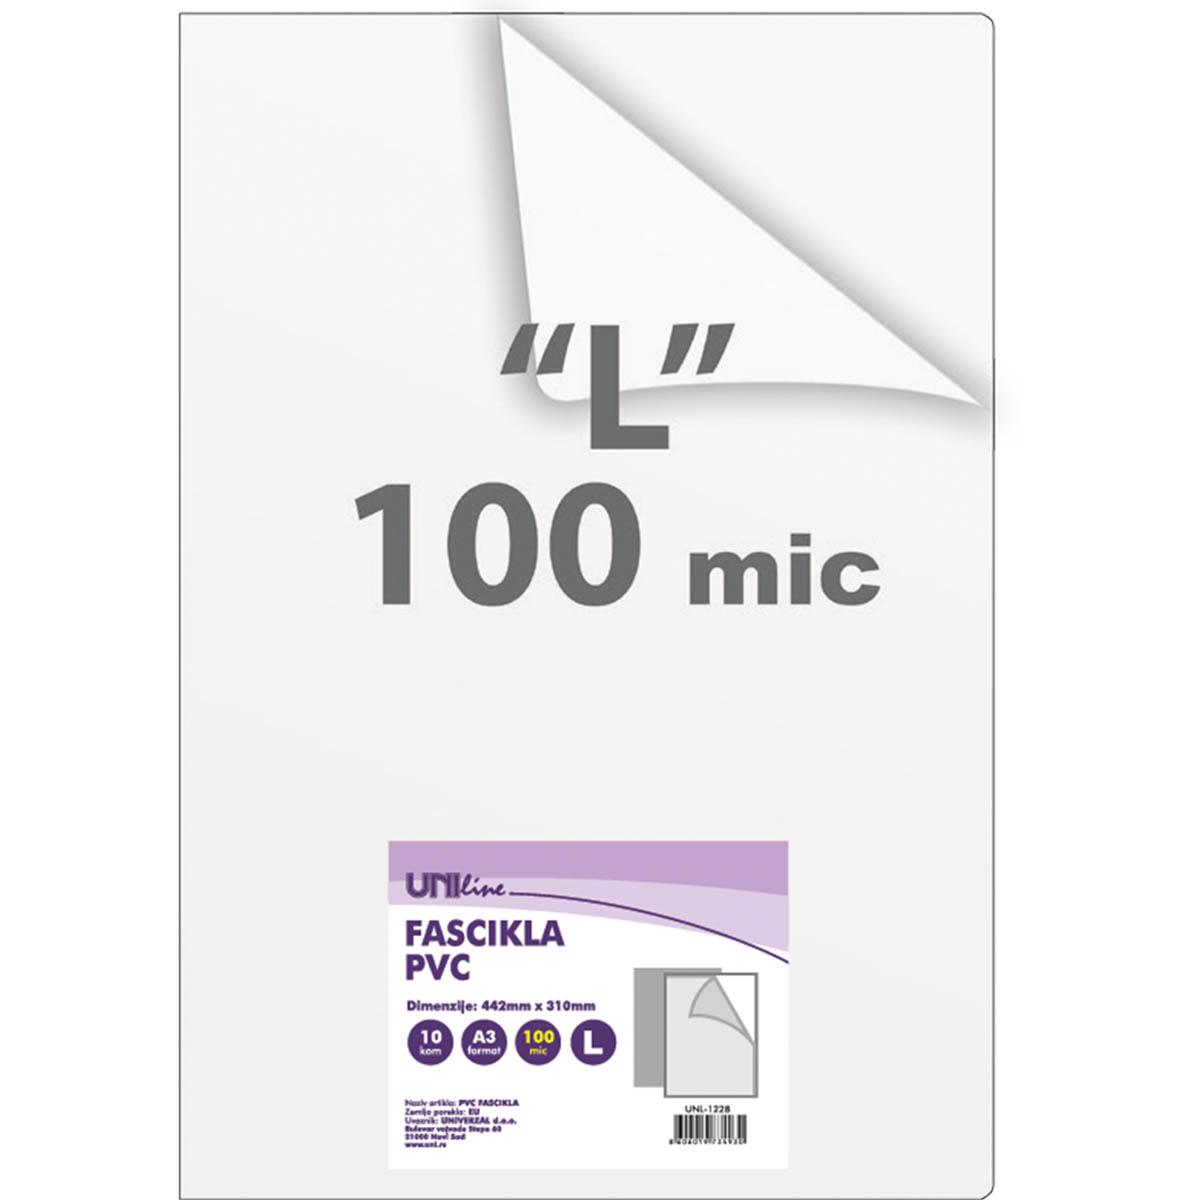 UNI LINE Fascikla A3 10/1 L 100 microna UNL-1228